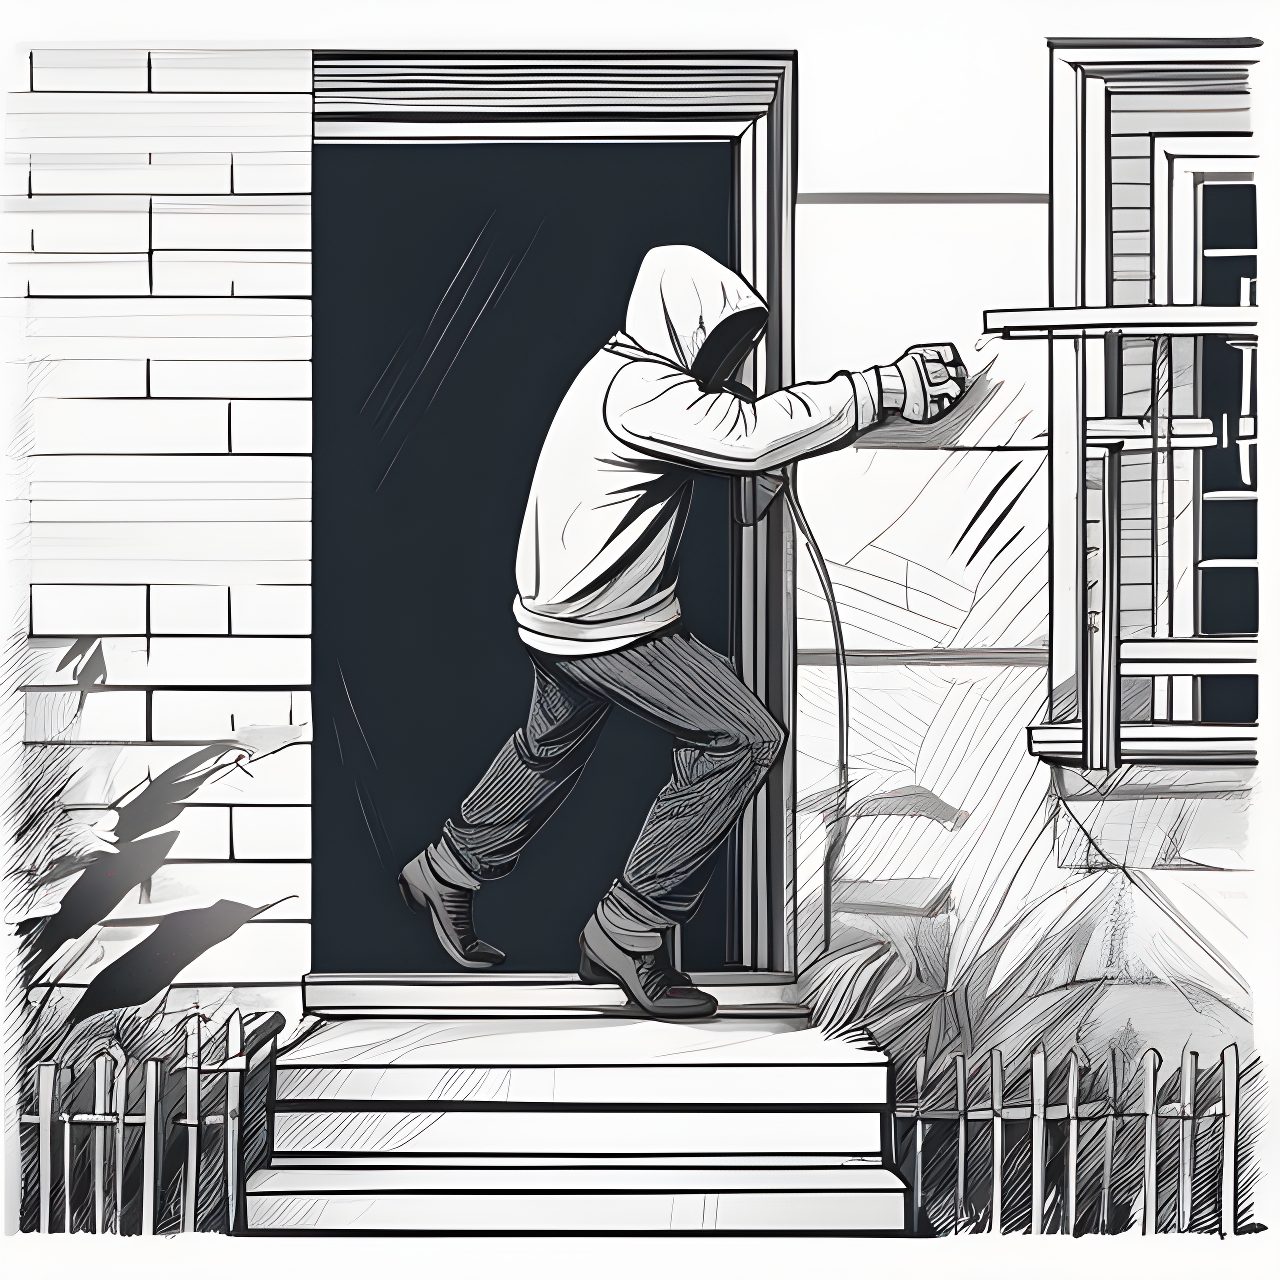 διάρρηξη σπιτιού ονειροκρίτης burglar breaking to a house artistic drawing, trending on artstation